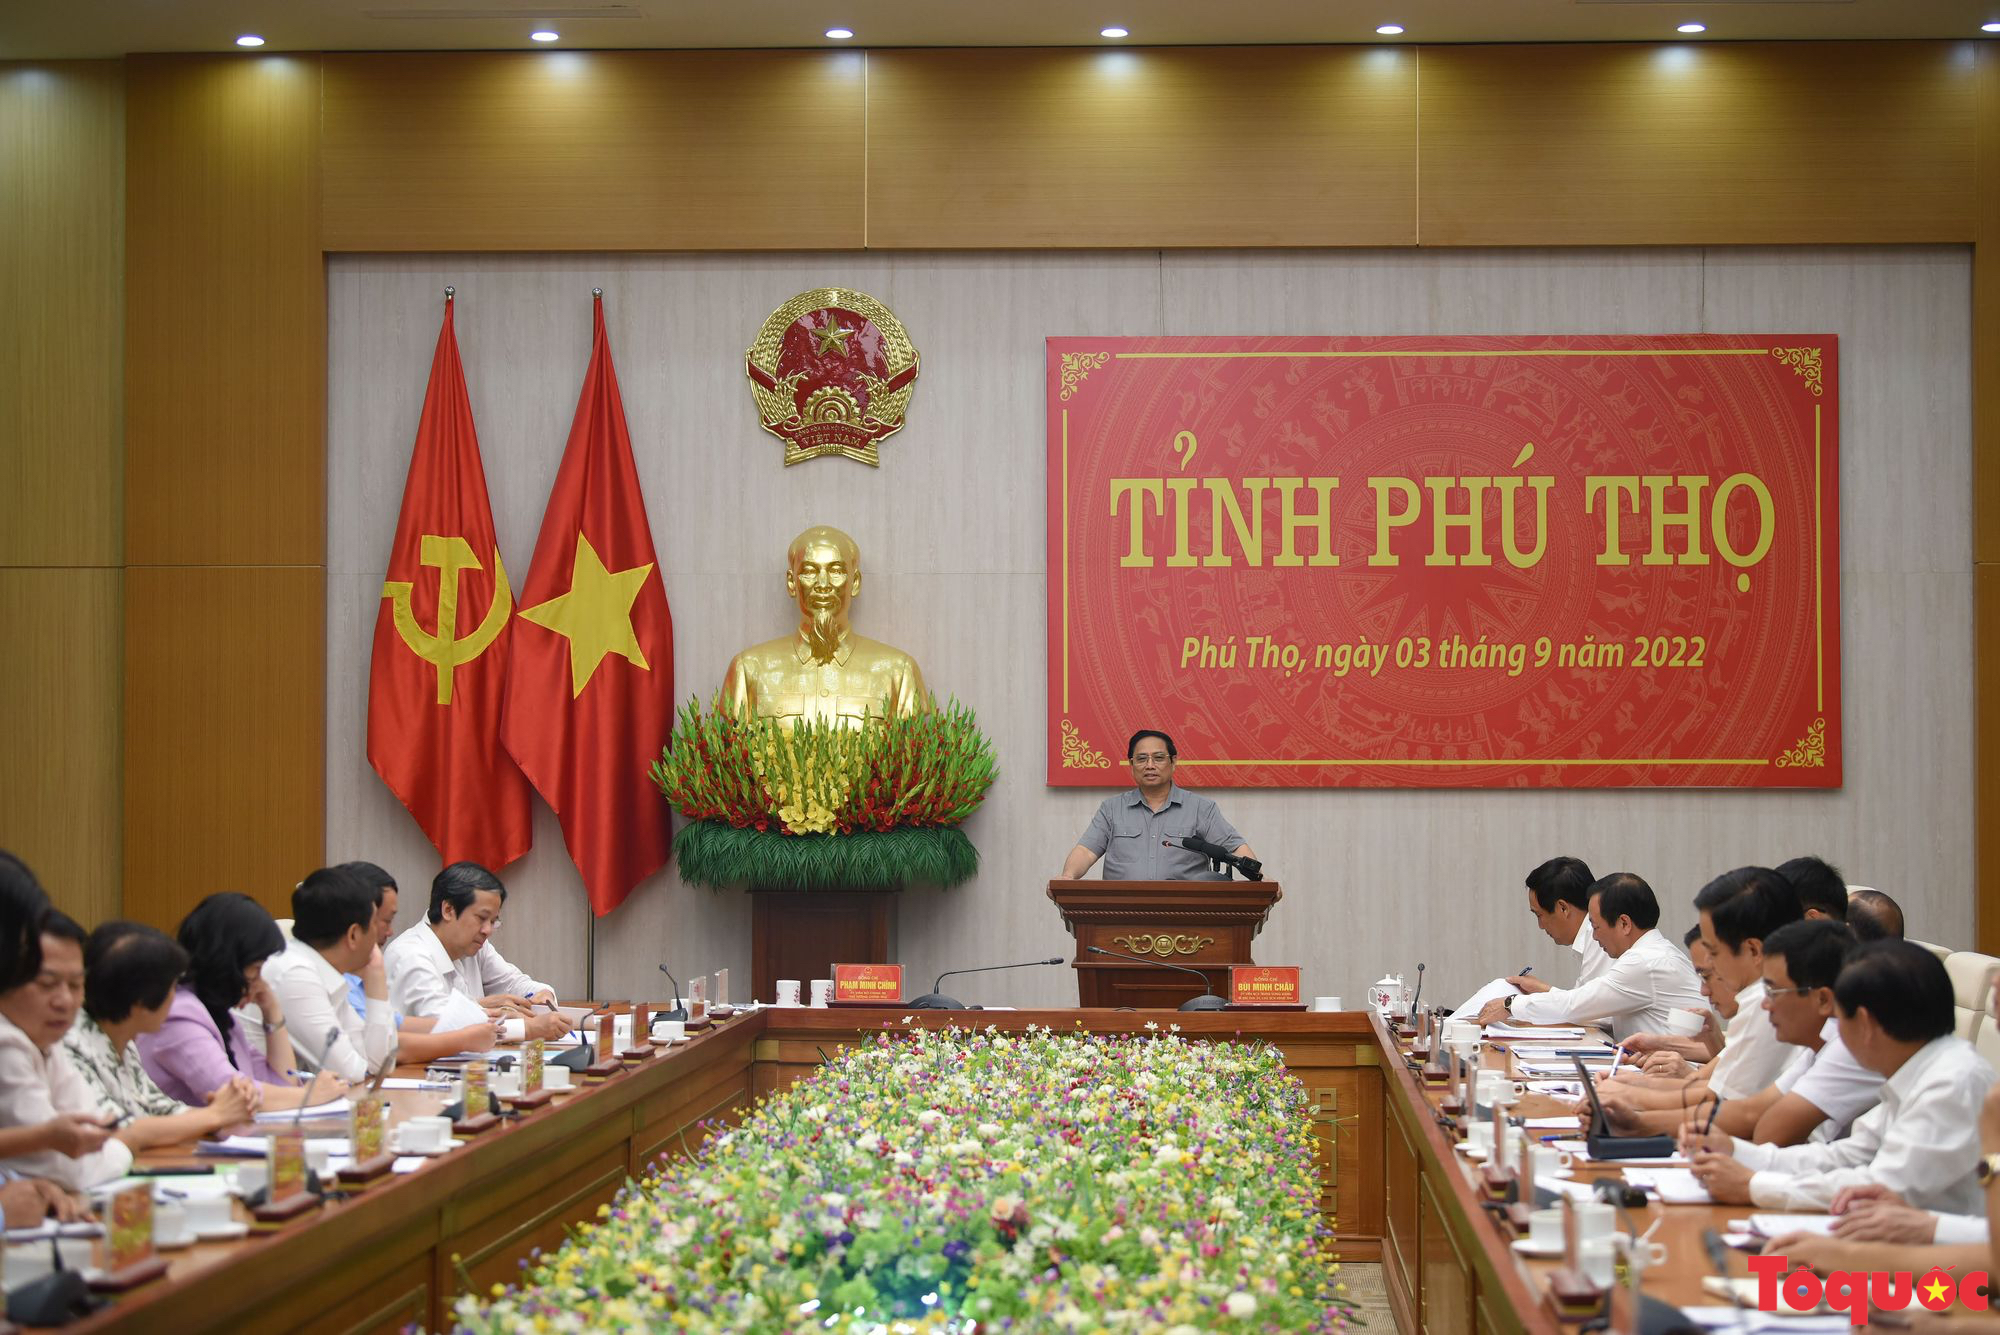 Thủ tướng: Phú Thọ phải phát huy tối đa lợi thế về truyền thống văn hóa, nguồn lực con người - Ảnh 2.